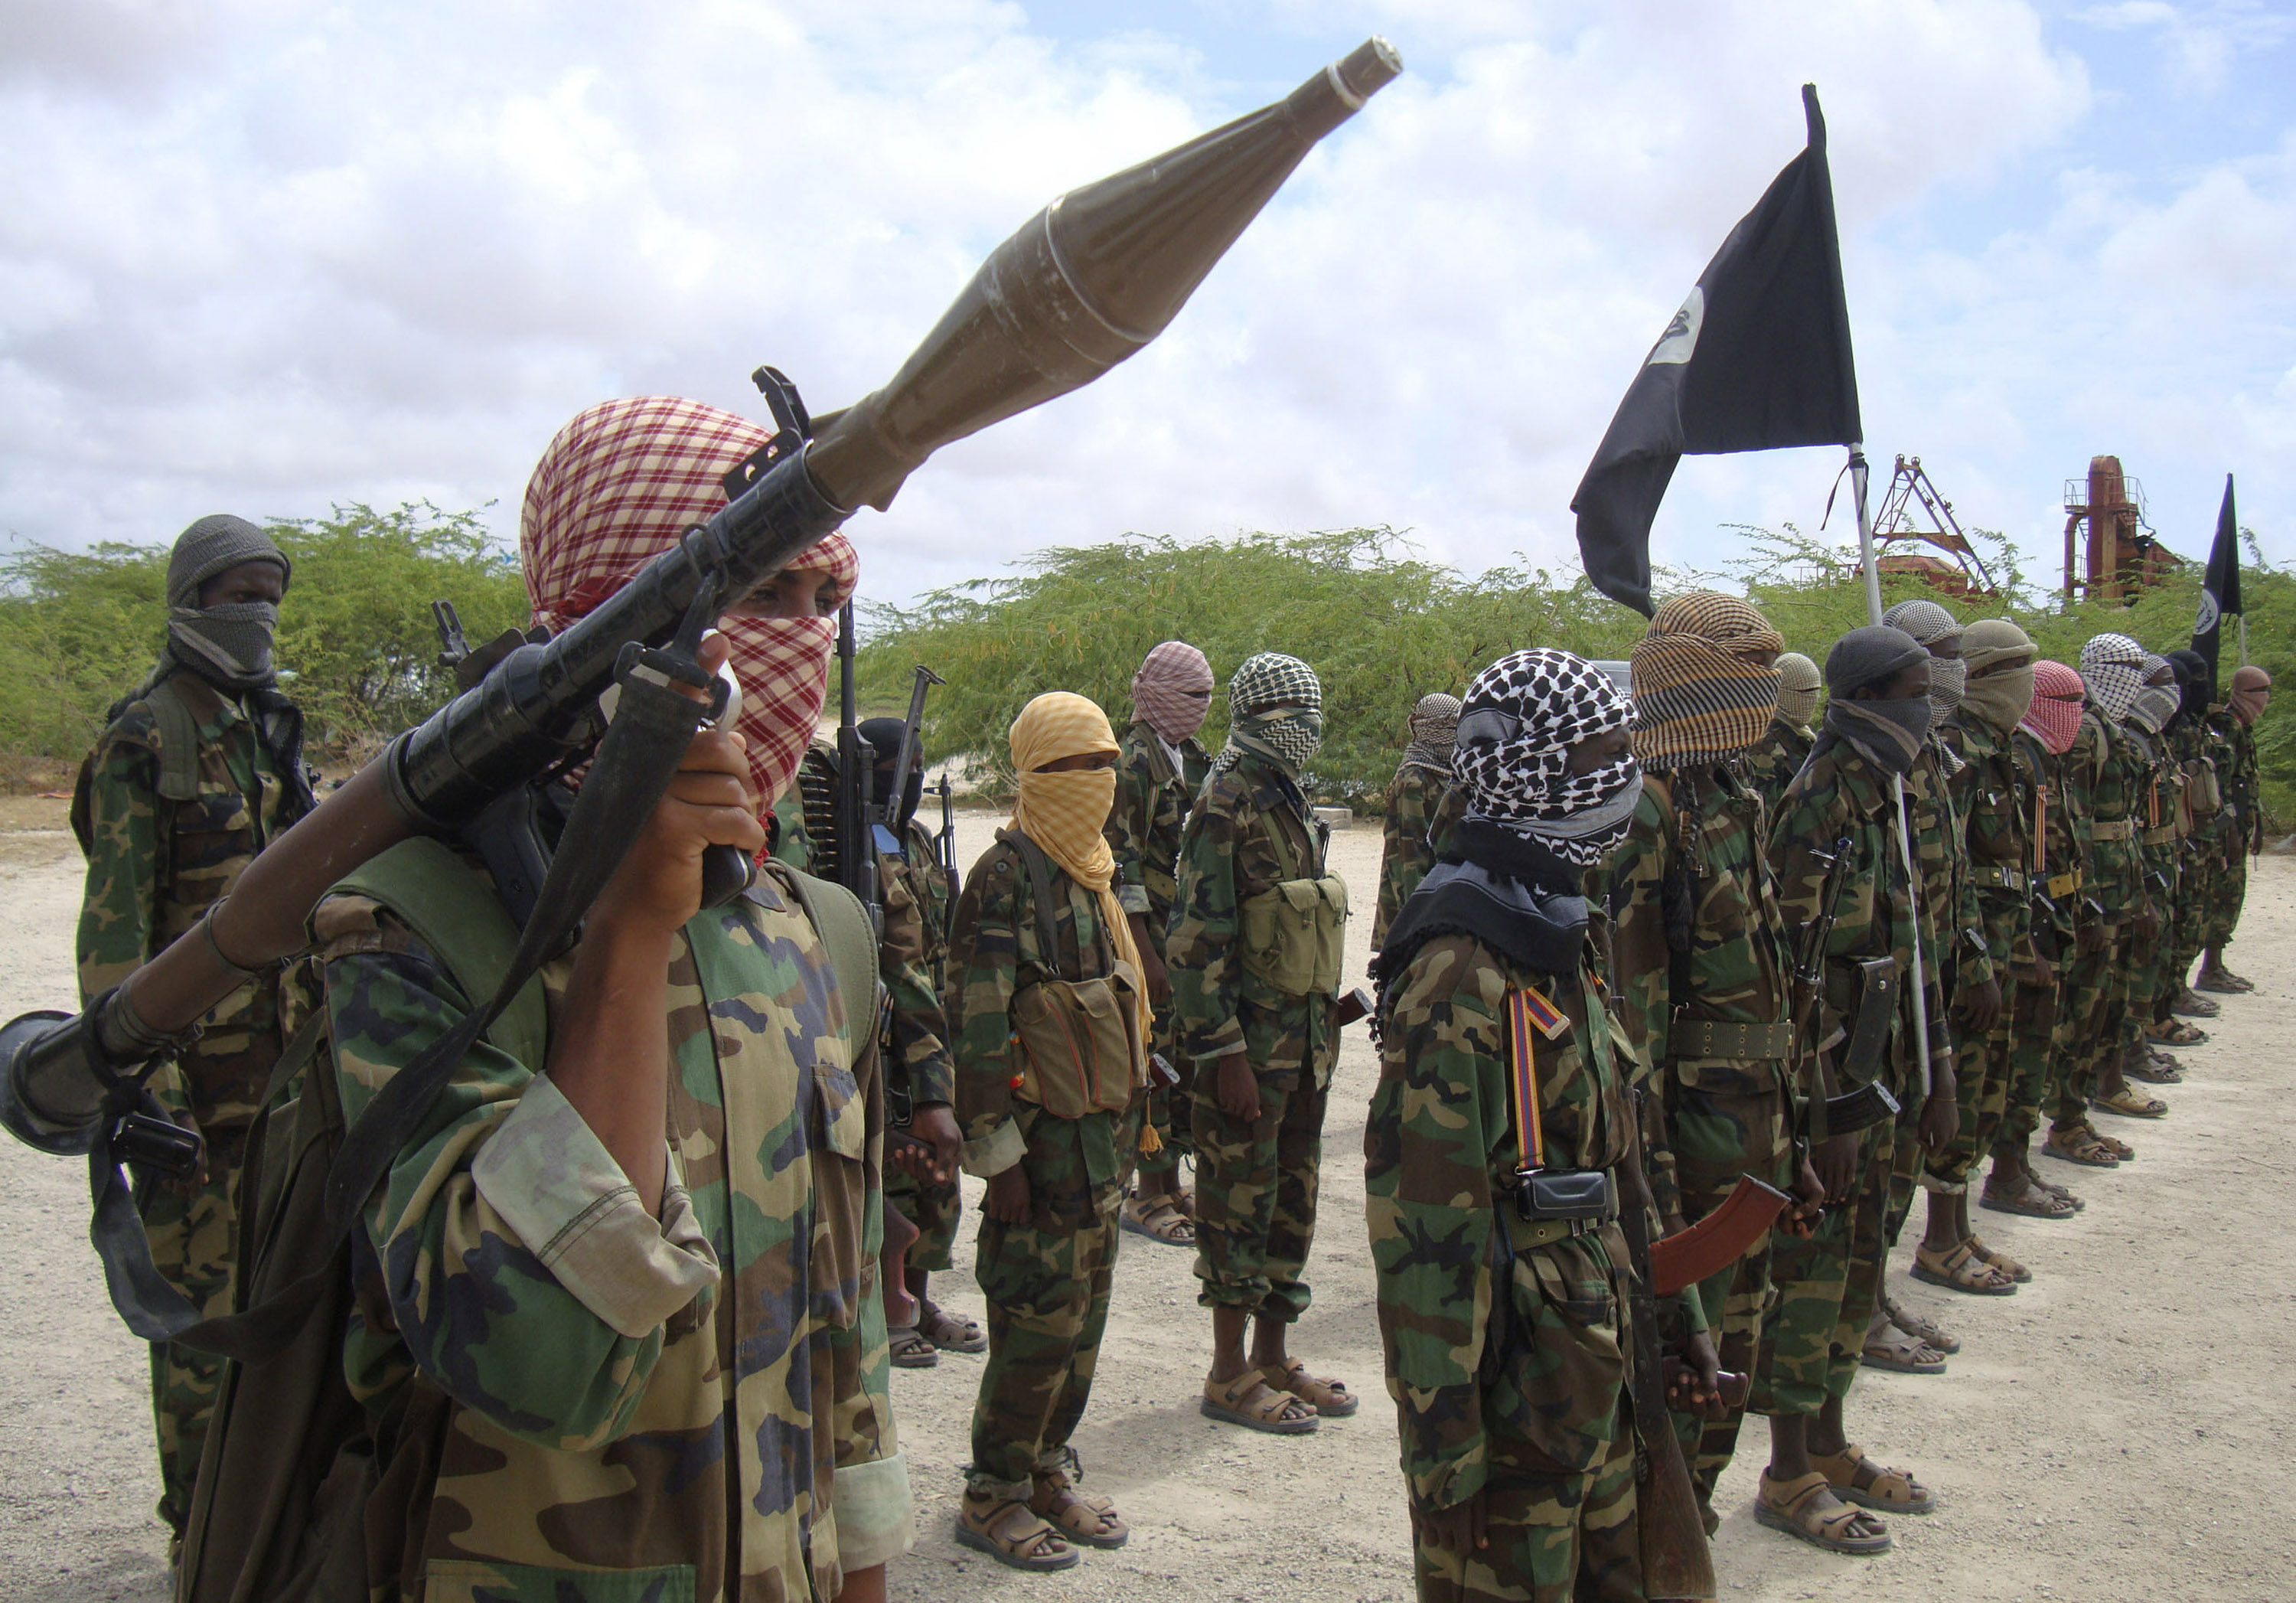 Terror, Mehdi Ghezali, Jyllands-Posten, Brott och straff, Somalia, Pakistan, al-Shabaab, Terrorism, Köpenhamn, Muhammedkarikatyrer, al-Qaida